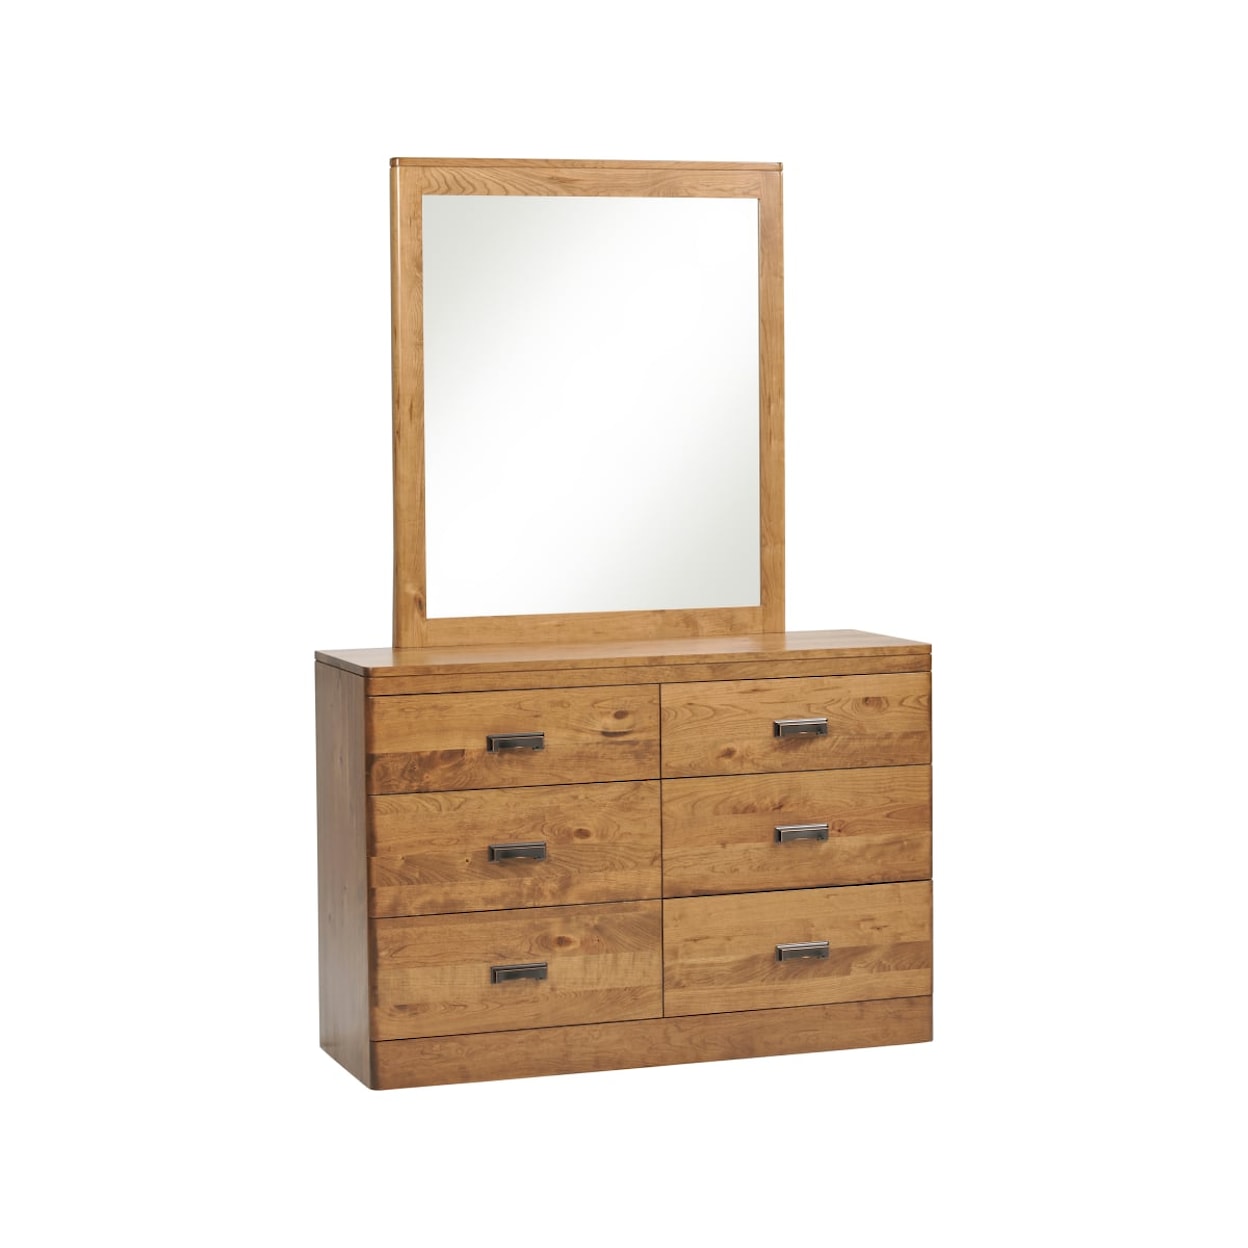 Millcraft Crossan 6-Drawer Dresser with 1" Bevel Mirror